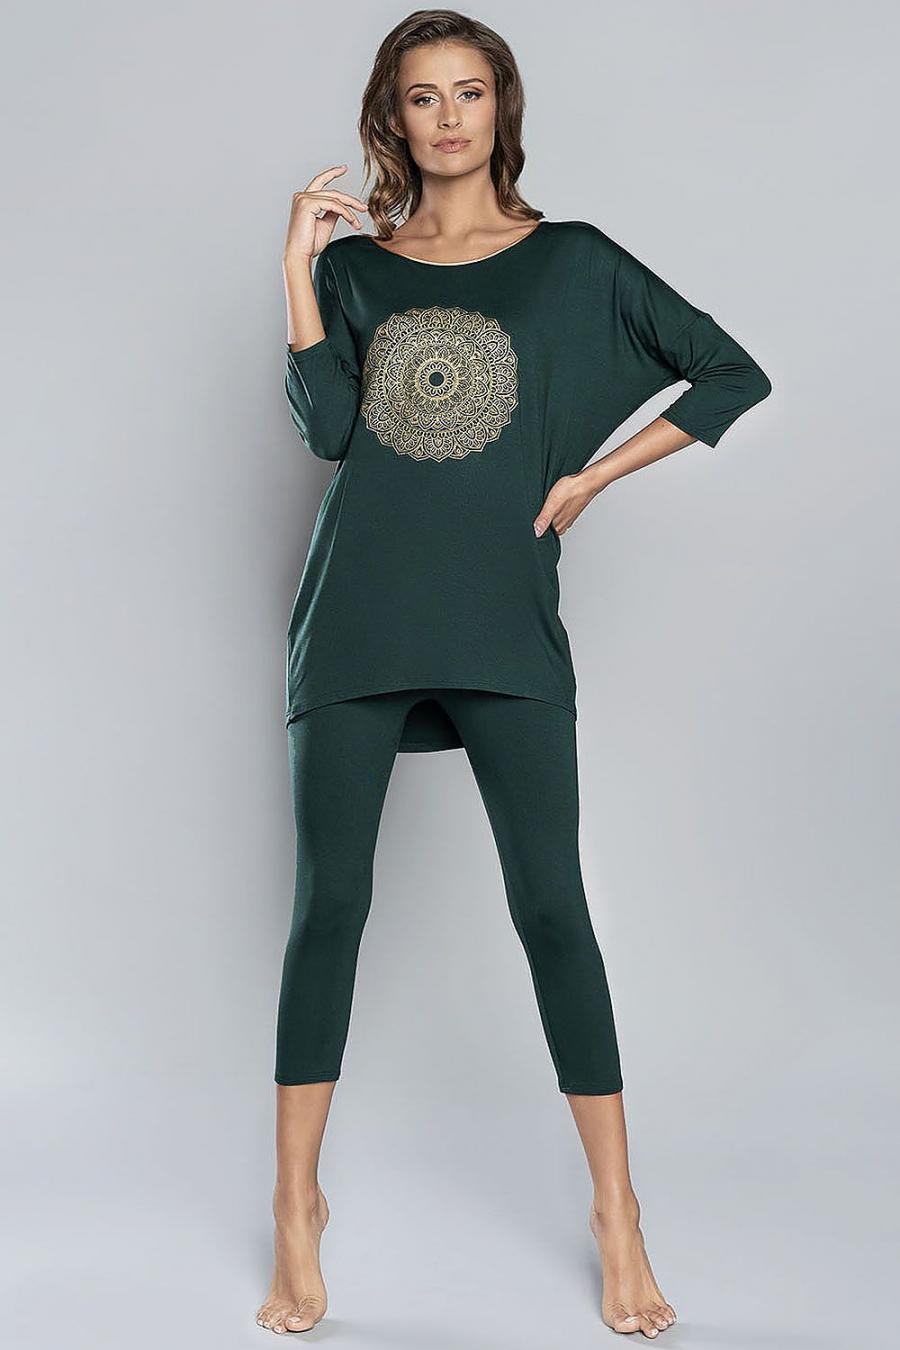 Ostatní značky Pyžamo dámské 146740 - Zelená - velikost XL